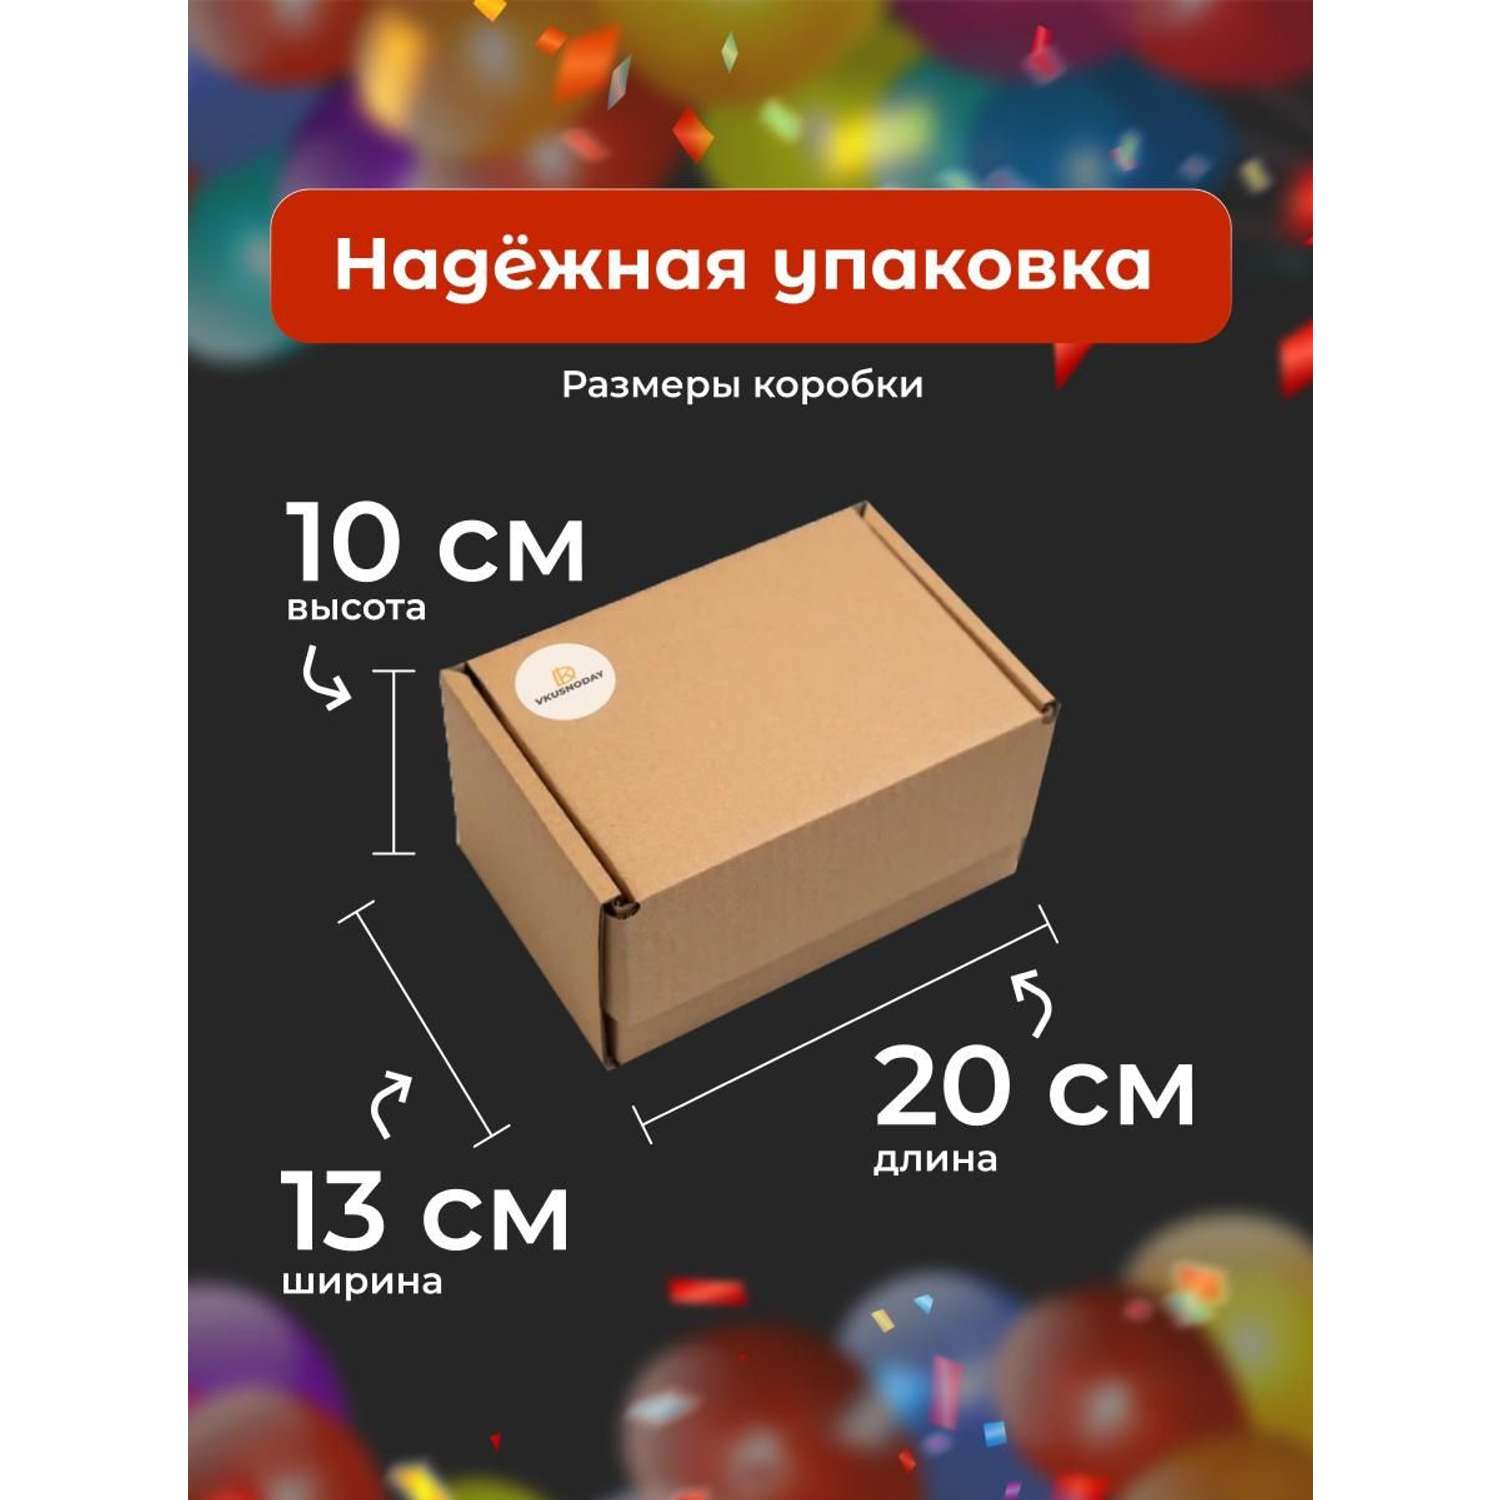 Сладкий бокс подарок VKUSNODAY 20 конфет - фото 2